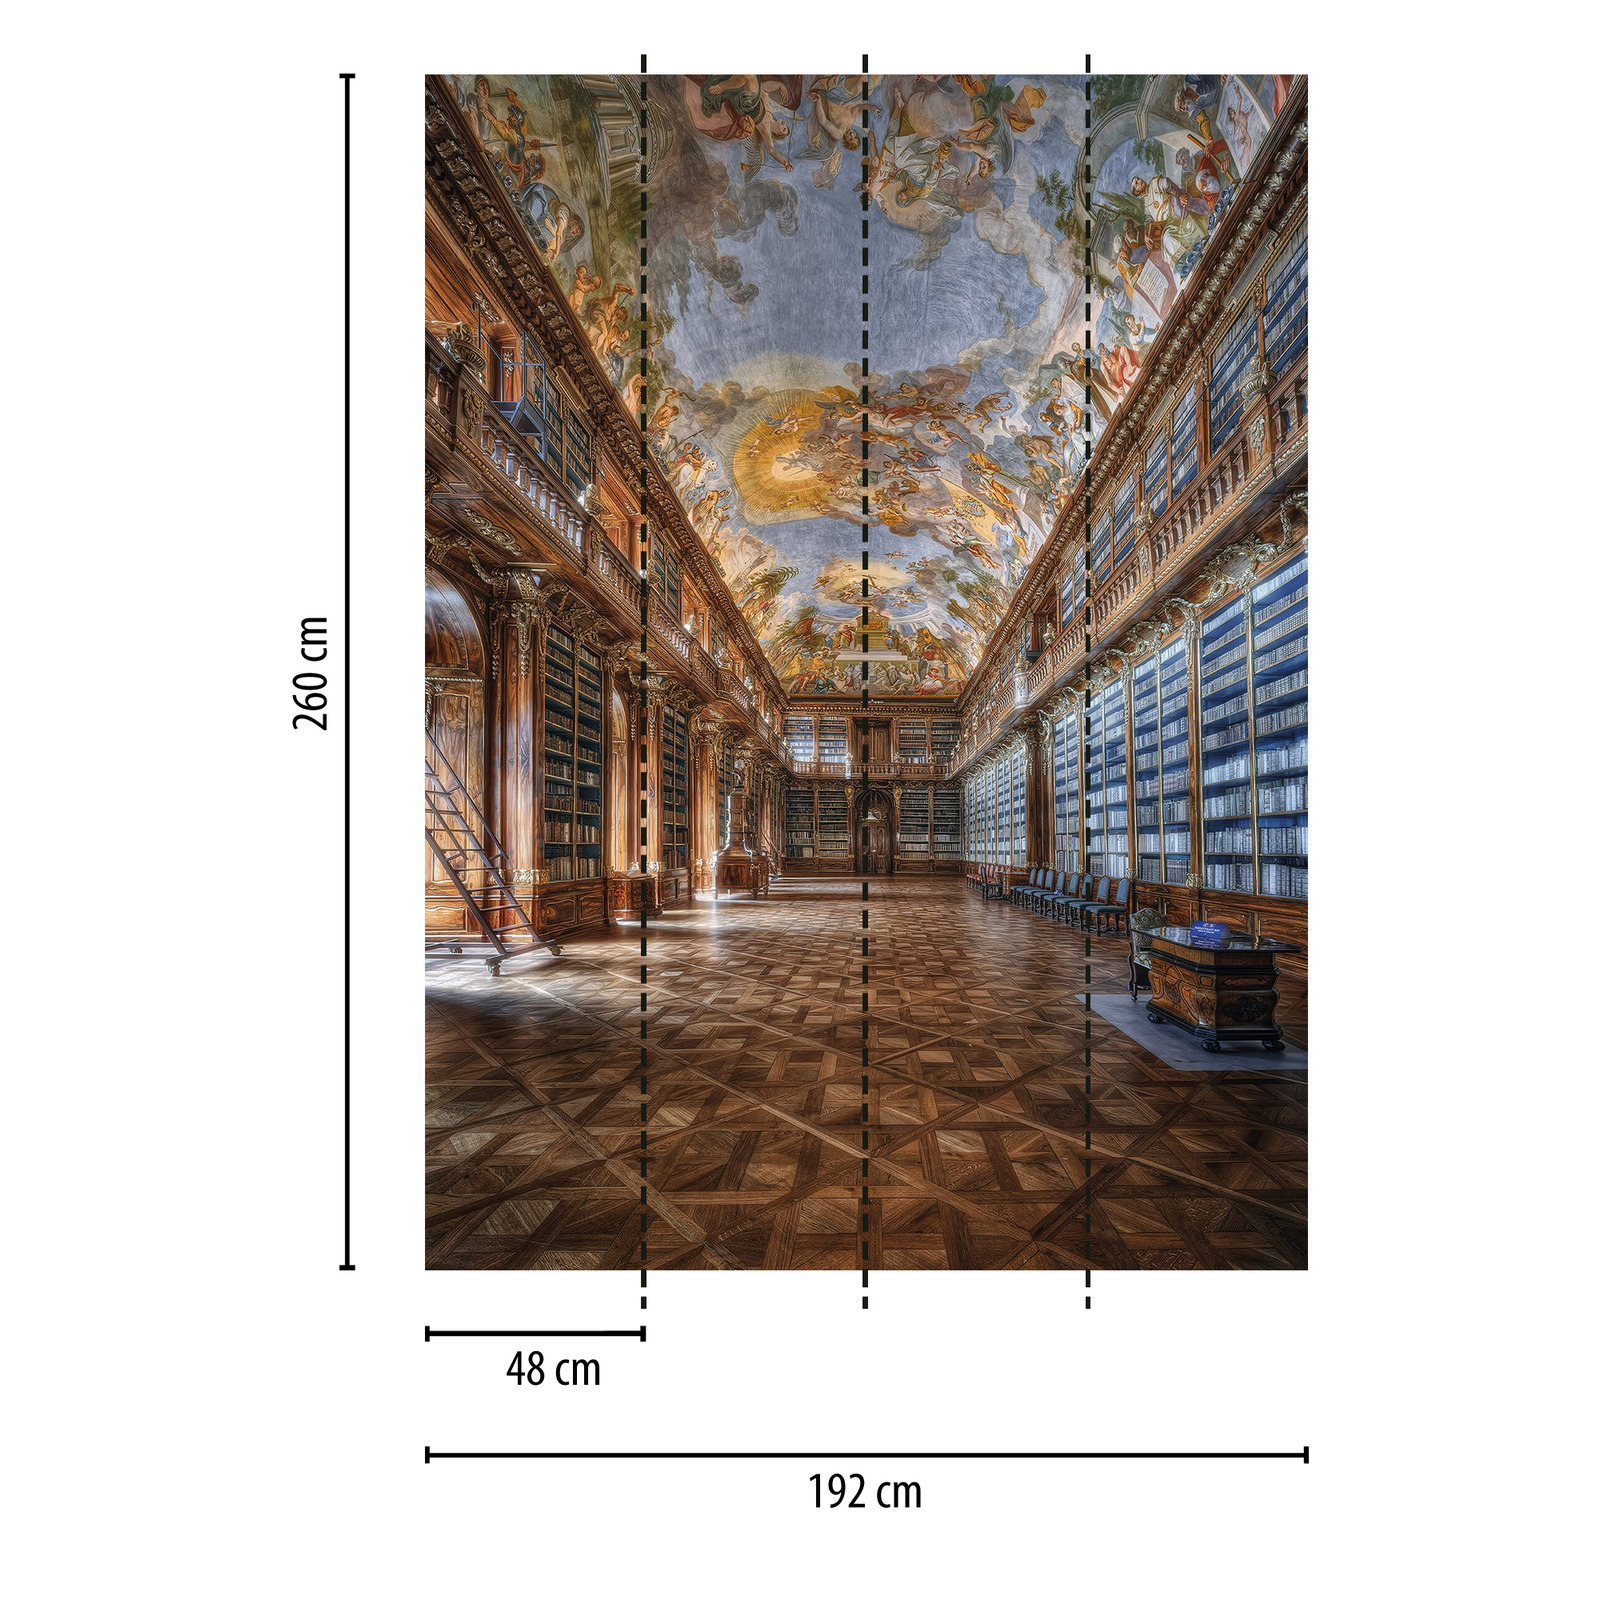             Muurschildering Bibliotheek Renaissance Architectuur
        